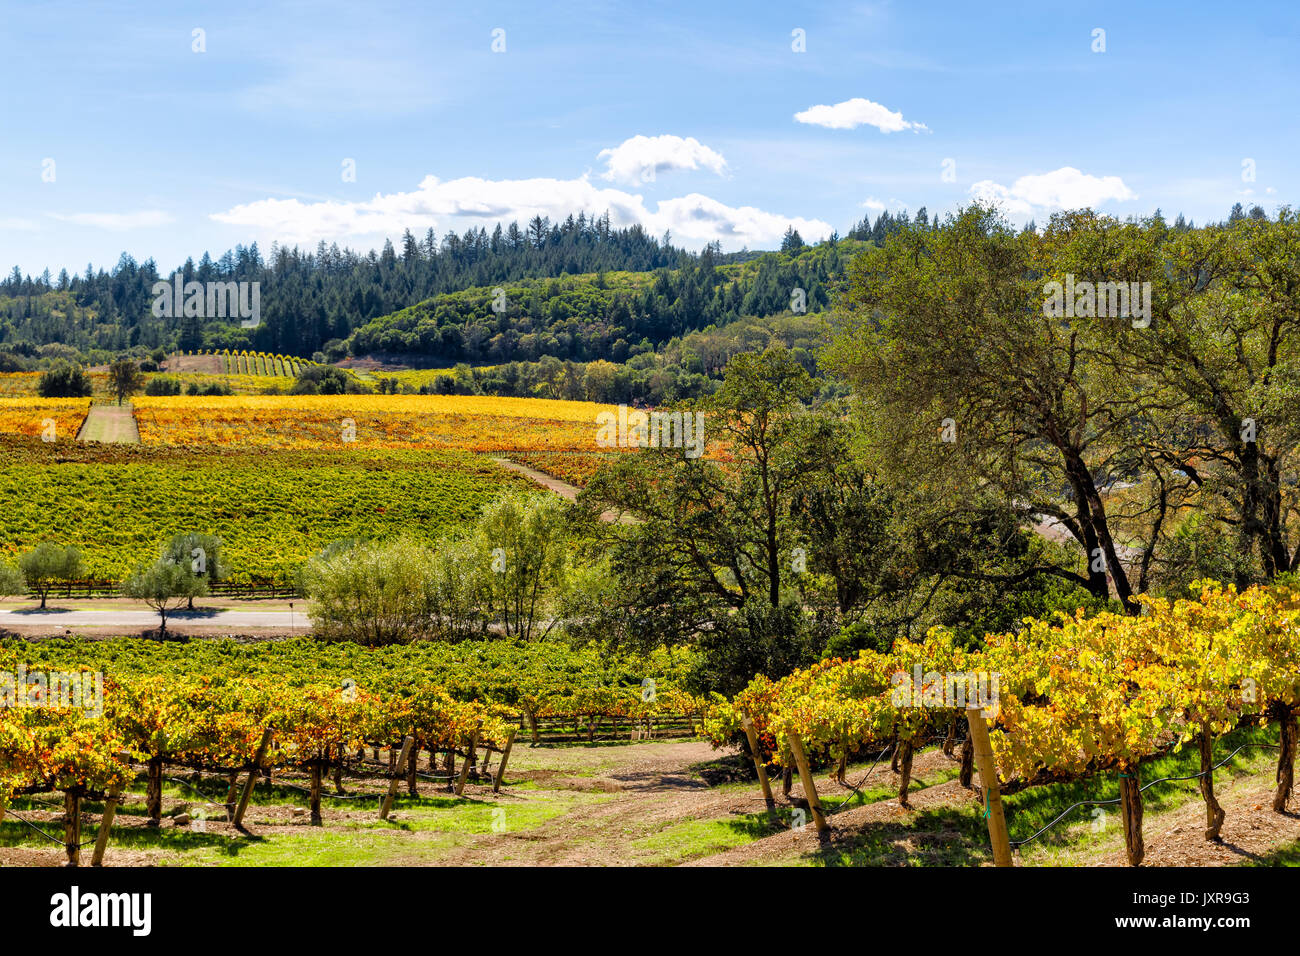 La regione del vino della california paesaggio di vigneti Foto Stock